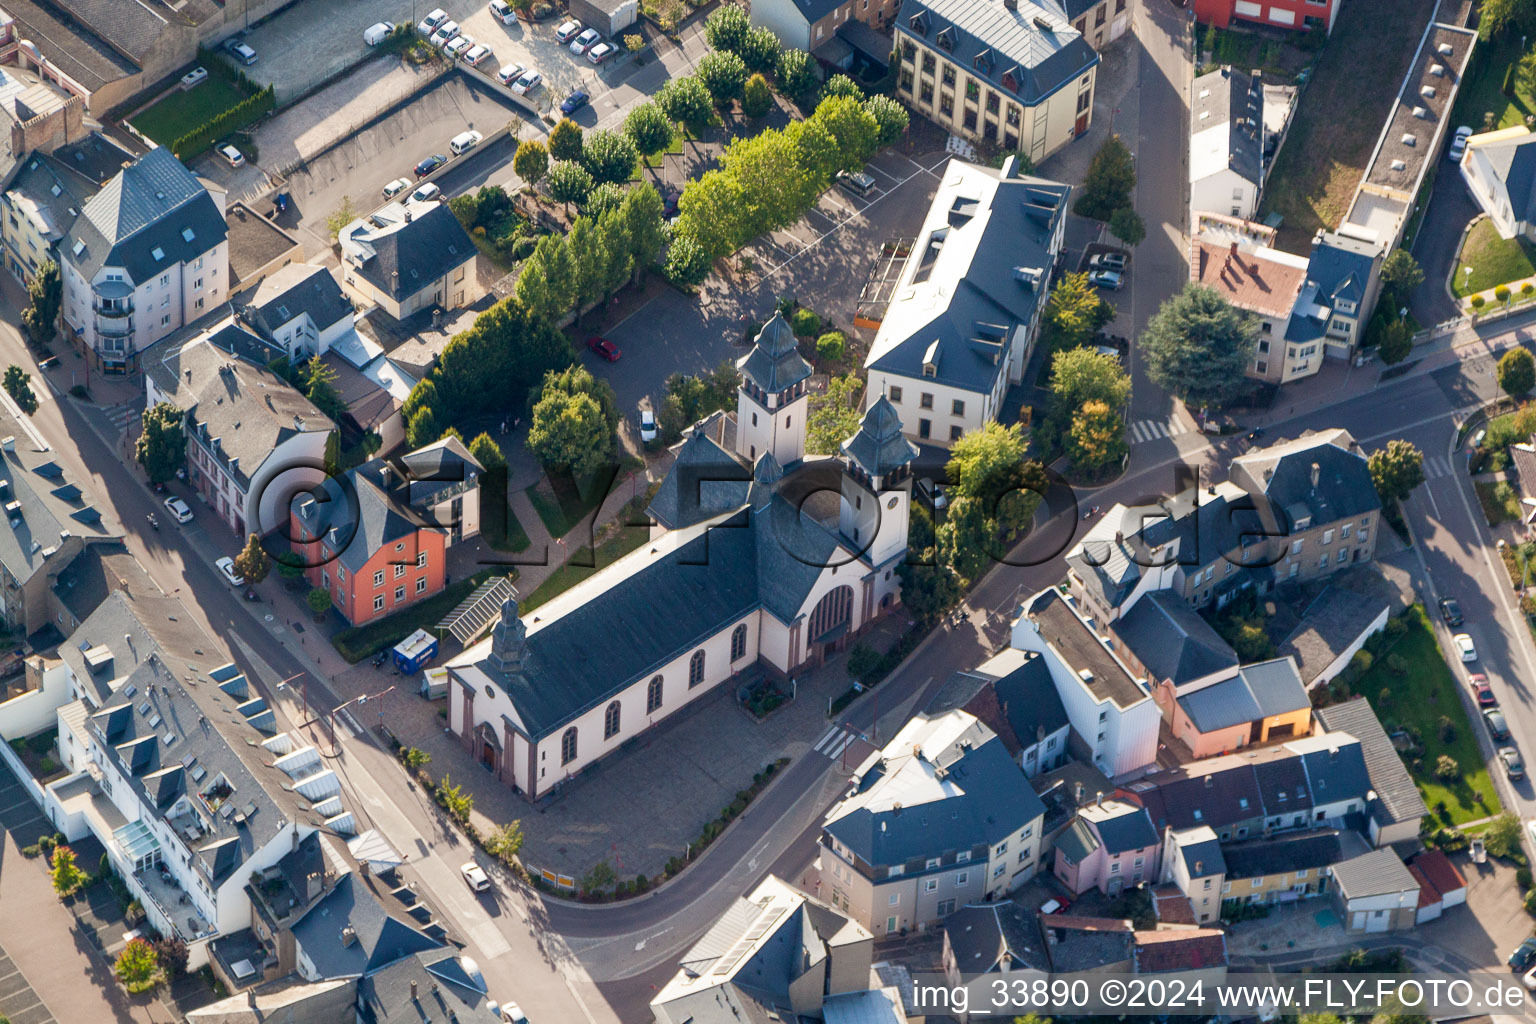 Church building of St. Martin in Mertert in Grevenmacher, Luxembourg